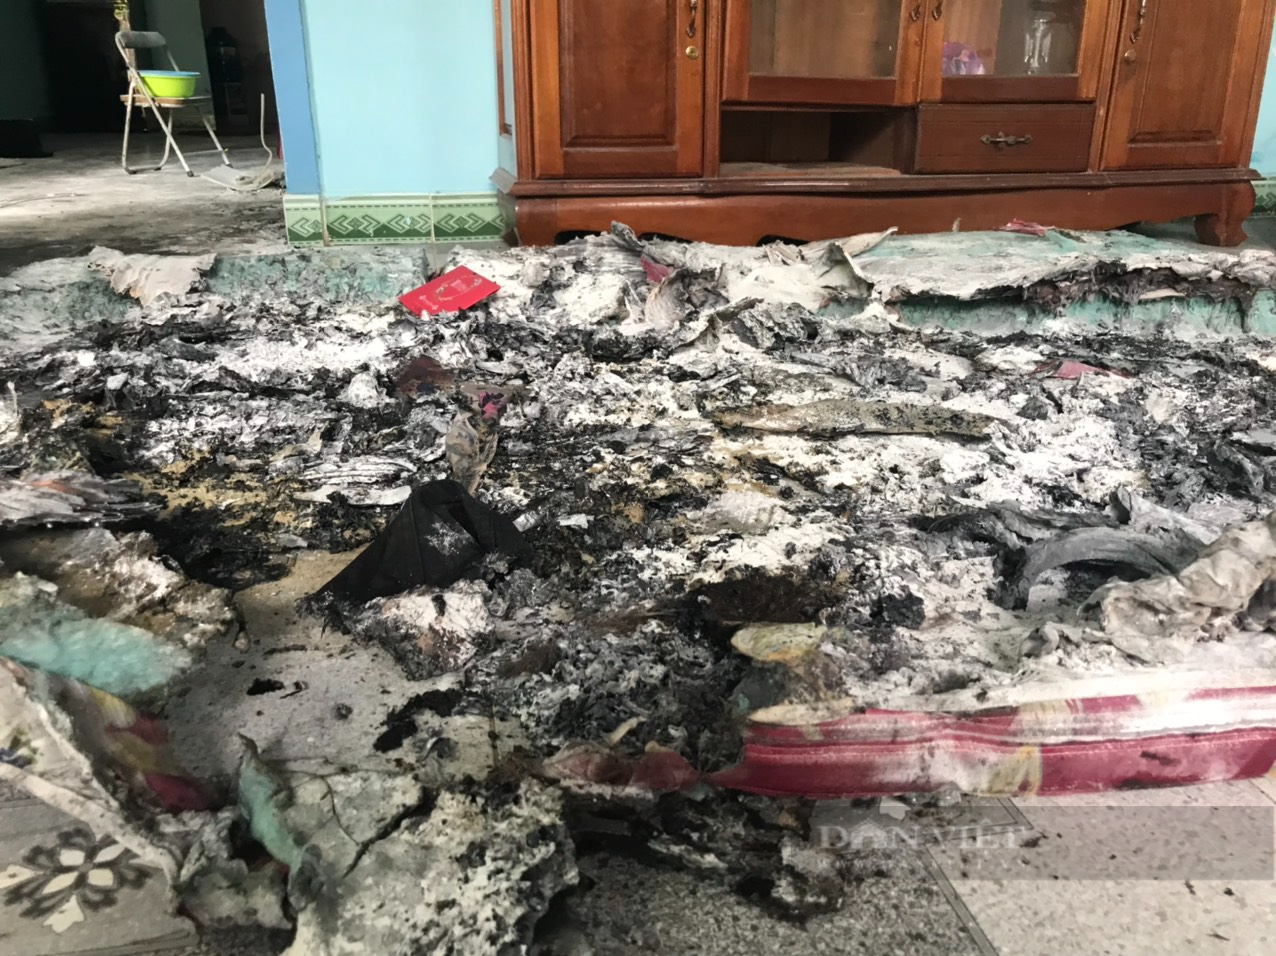  Hiện trường vụ cháy khiến cả hai vợ chồng trẻ tử vong ở Khánh Hòa - Ảnh 1.